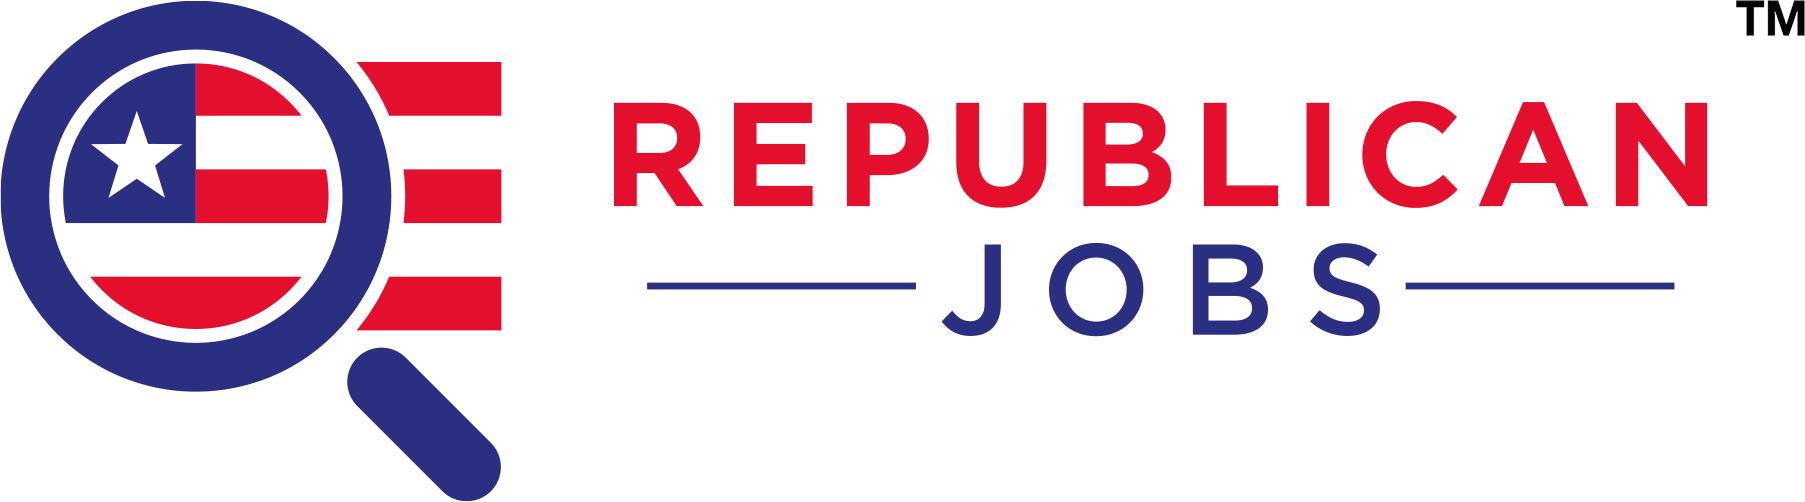 Republican Jobs Logo